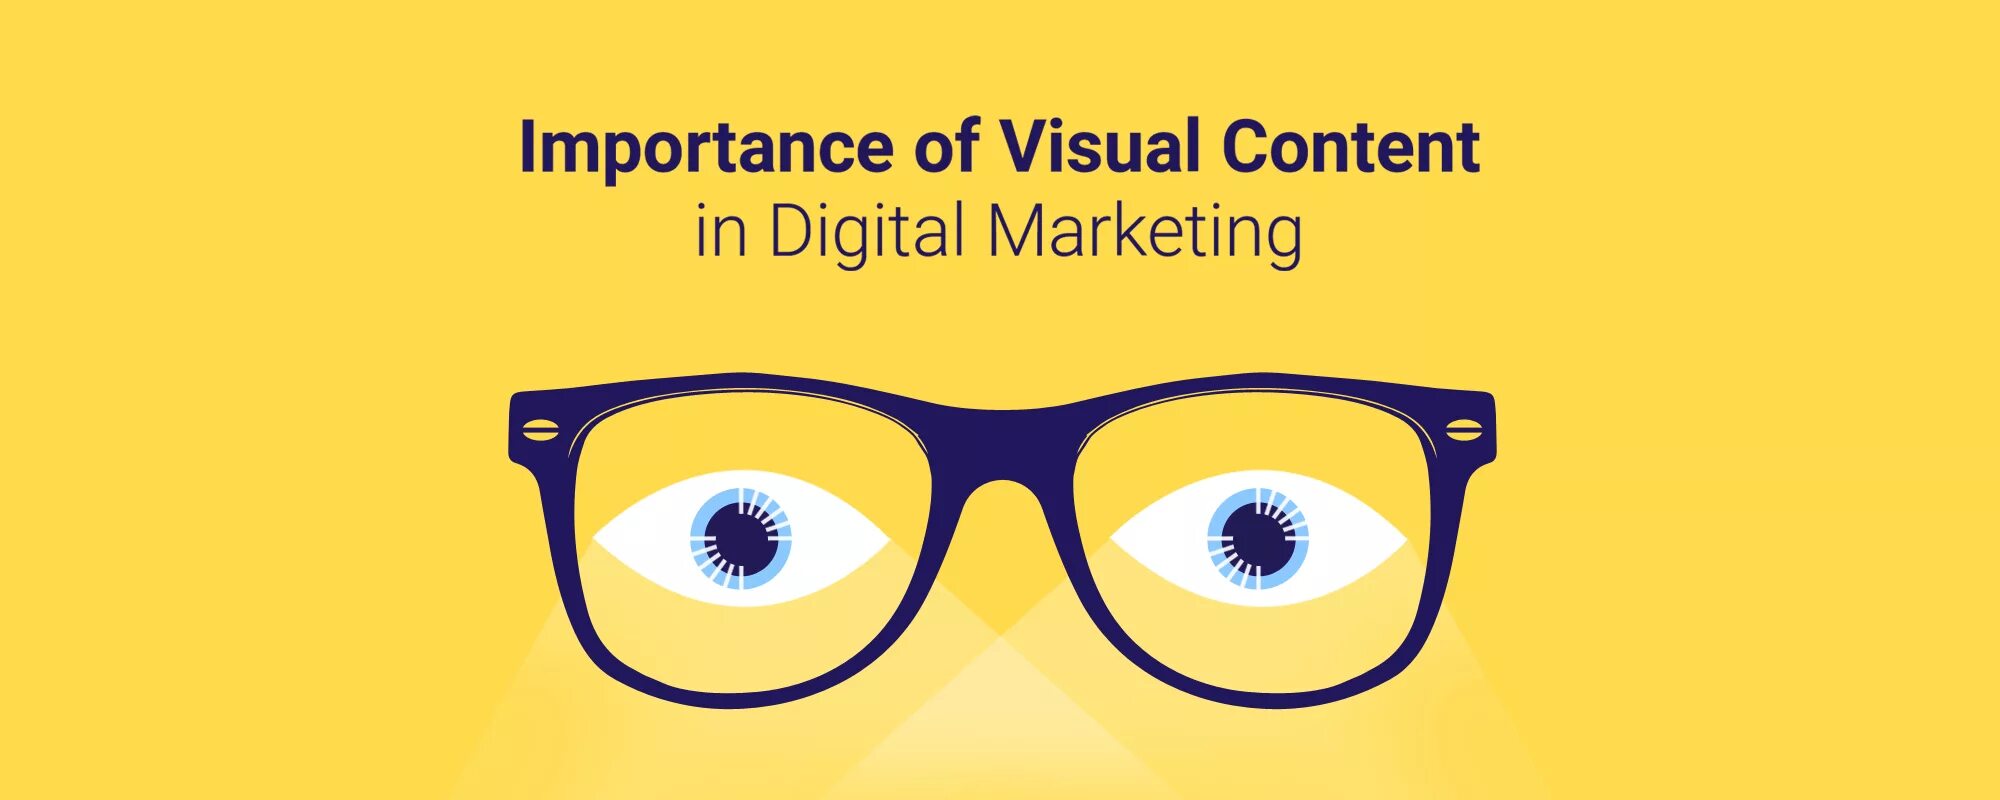 36 контент. Visual content. Визуал это в психологии. Узнаваемый контент визуал. Visual content creator.